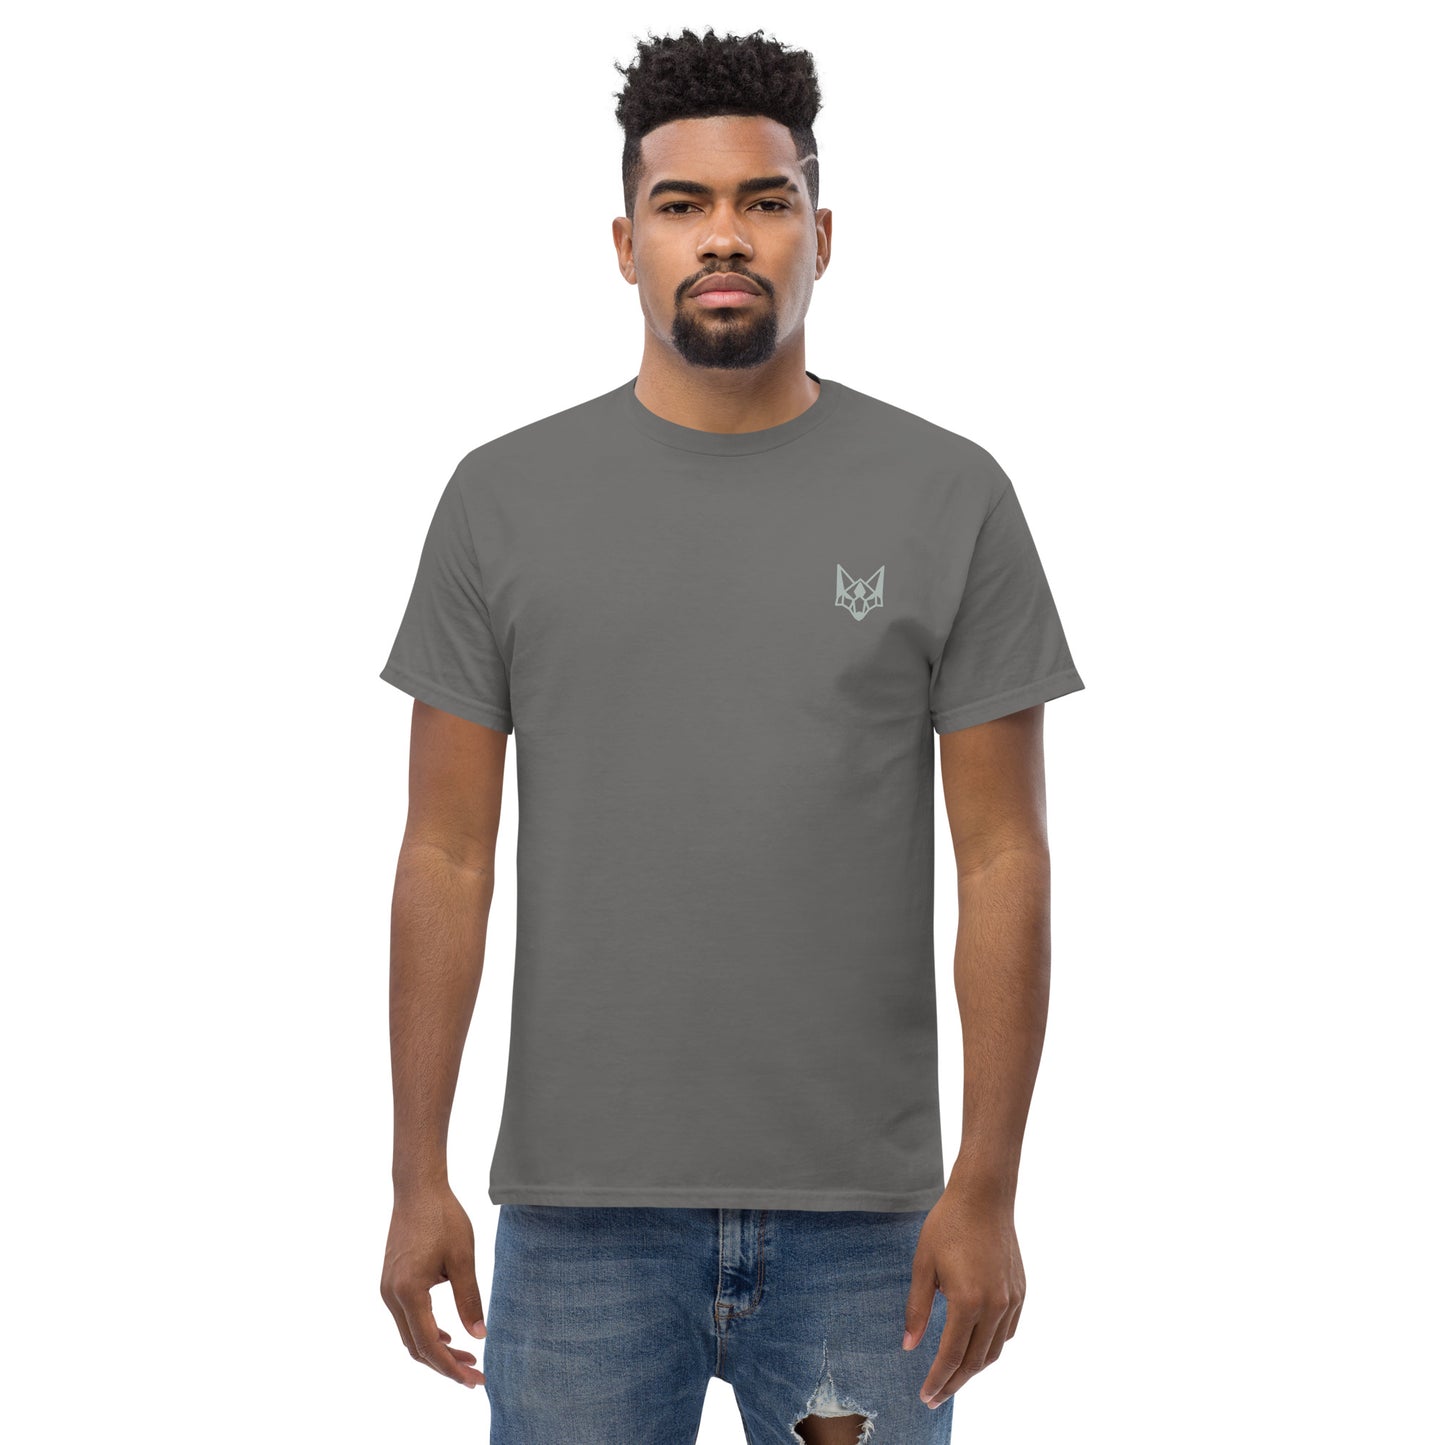 Hilltop Fox T-shirt classique pour hommes